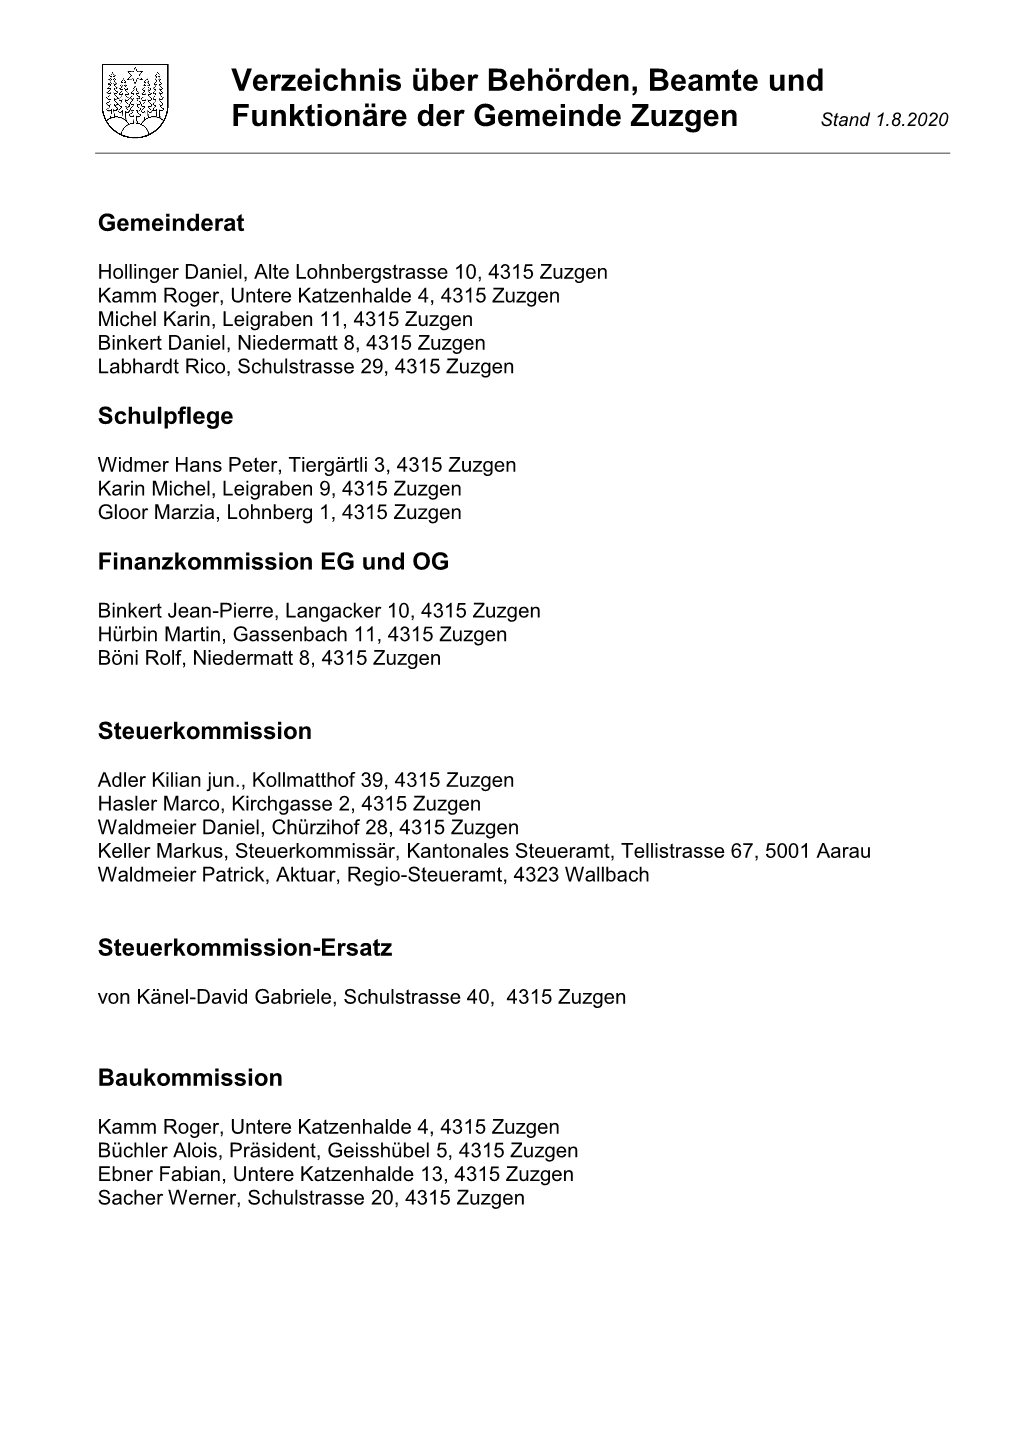 Verzeichnis Über Behörden, Beamte Und Funktionäre Der Gemeinde Zuzgen Stand 1.8.2020